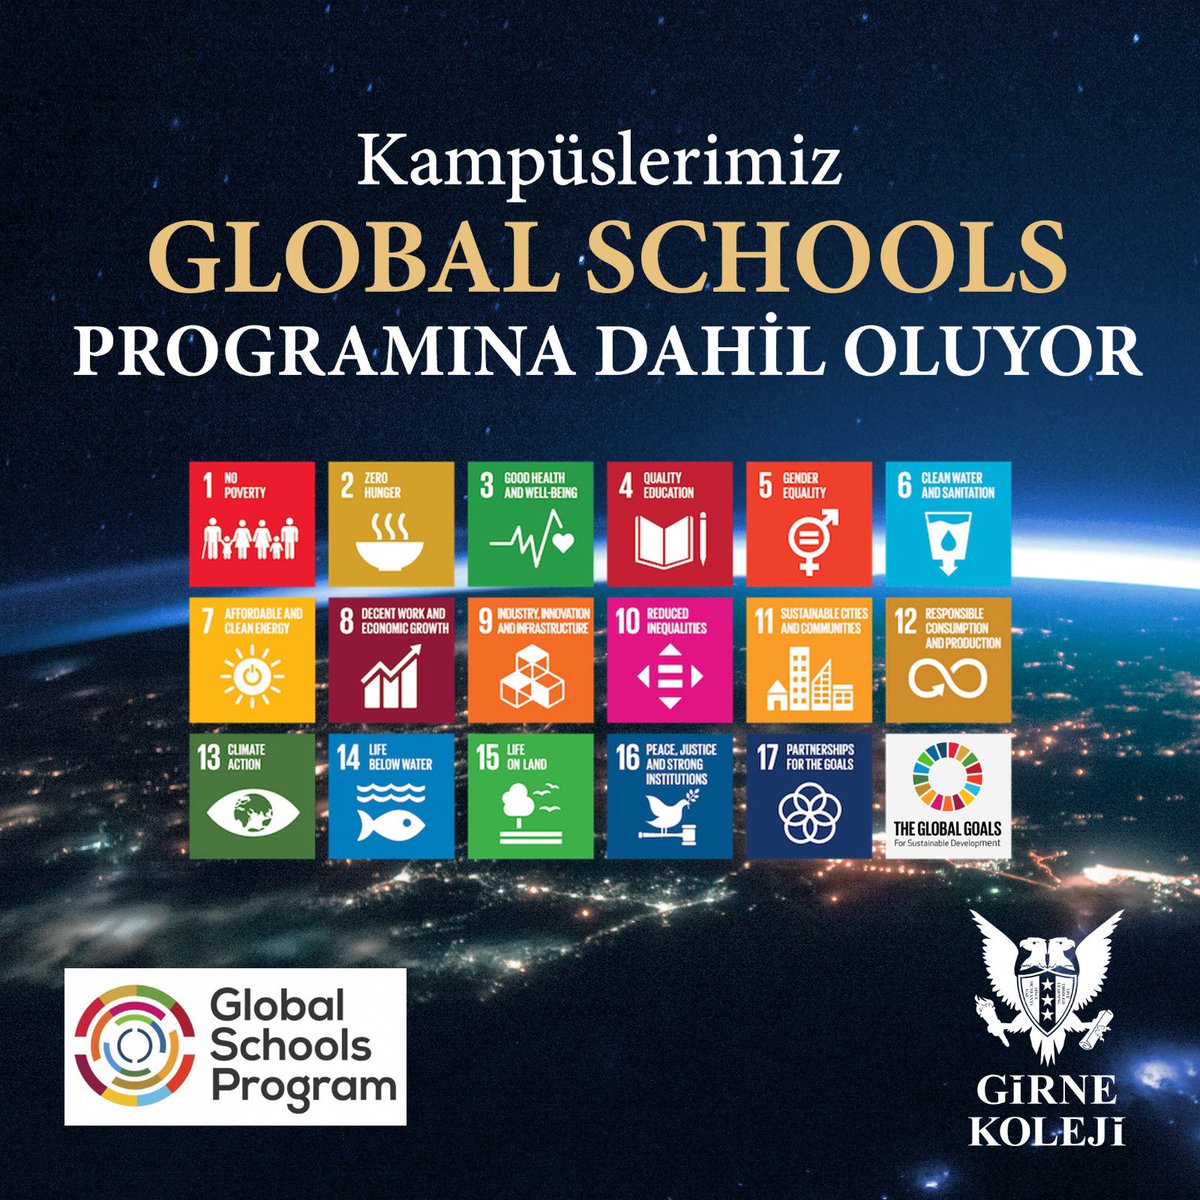 #GirneKoleji #DünyanınKapılarıSanaAçık #GlobalSchools #Okul #Global #School #Program #ÖzelOkul #Kampüs